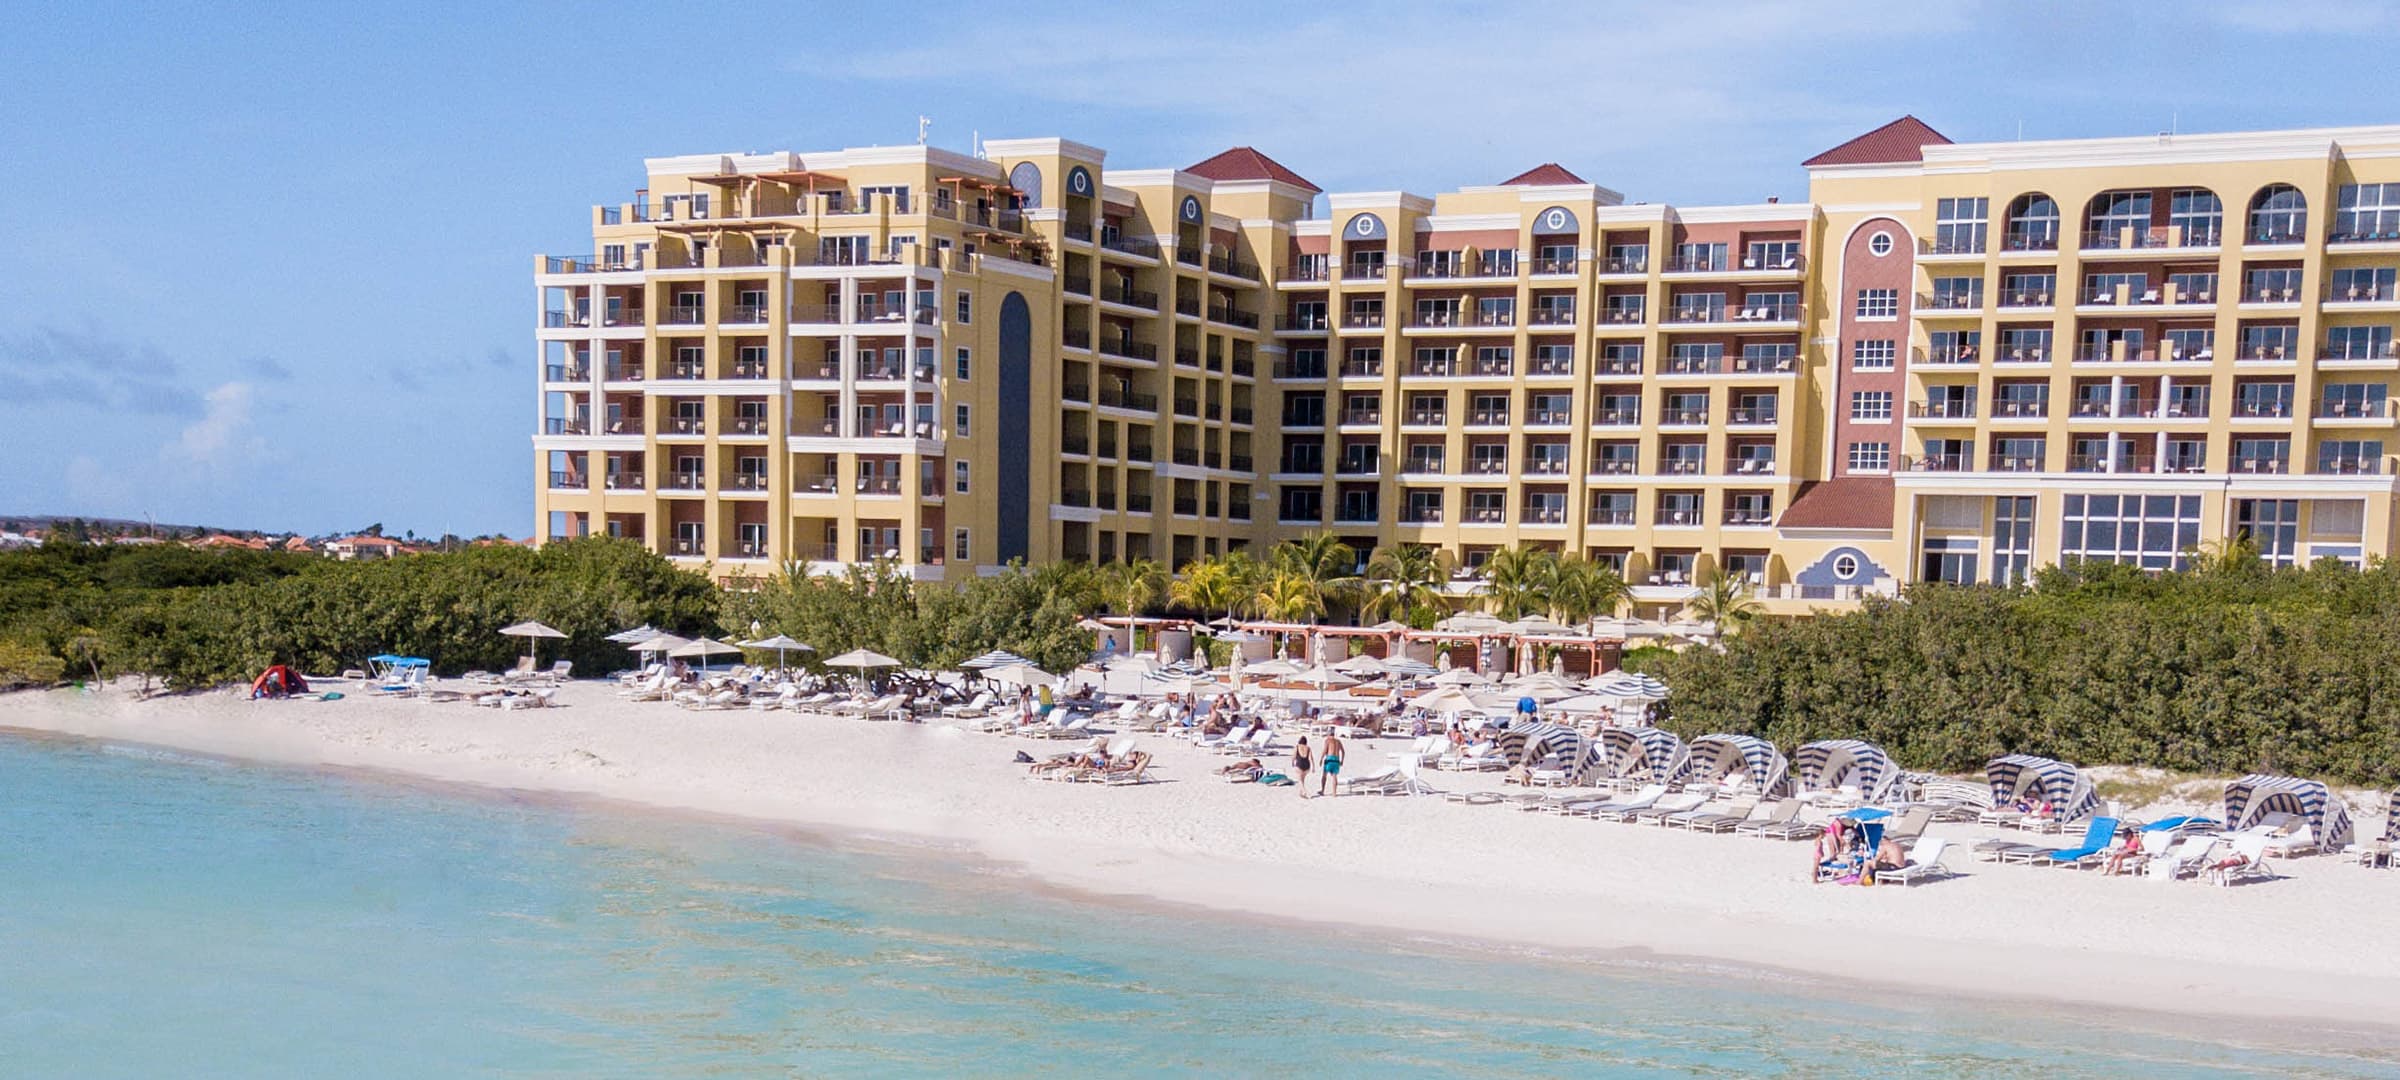 The Ritz Carlton, Aruba